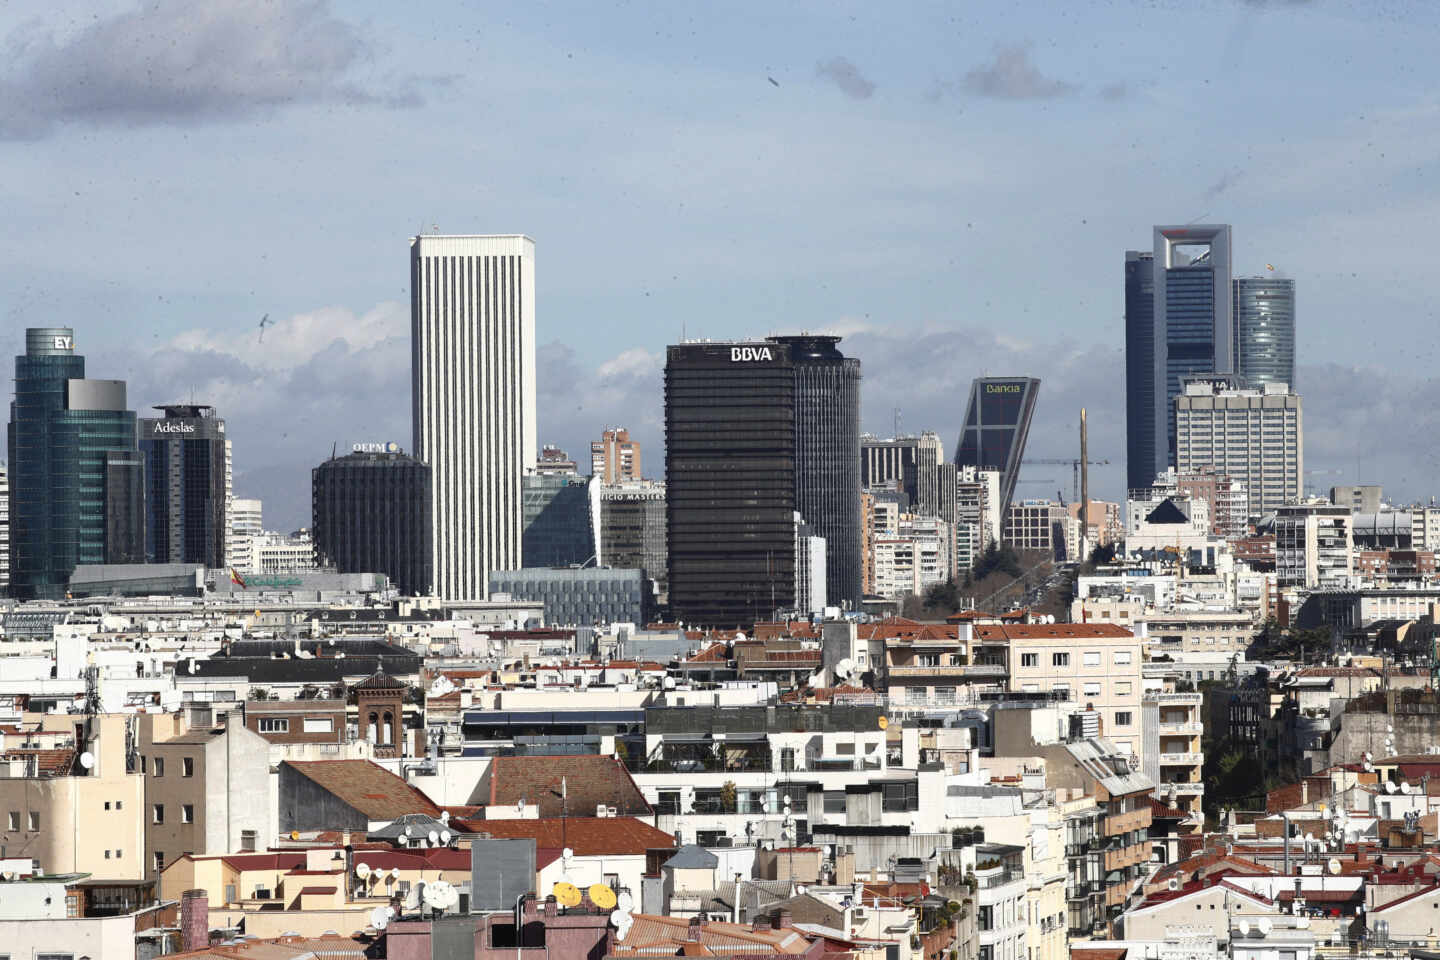 Vista de la zona de rascacielos de Madrid.